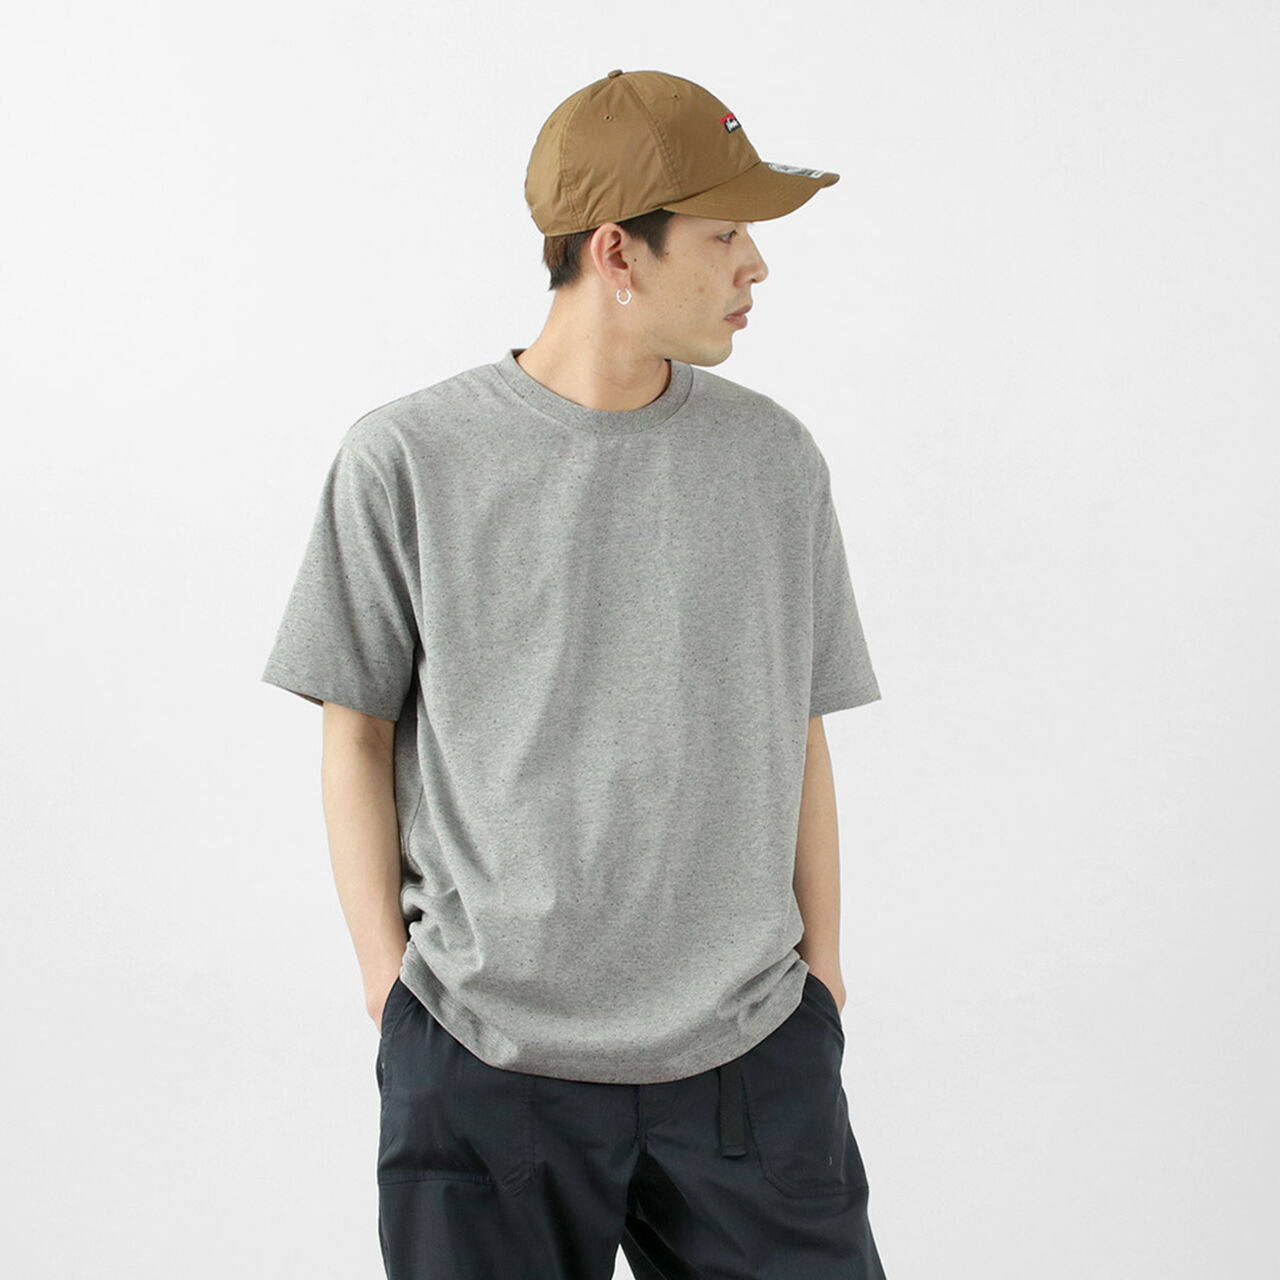 Eco Hybrid Daily T-shirt,Grey, large image number 0